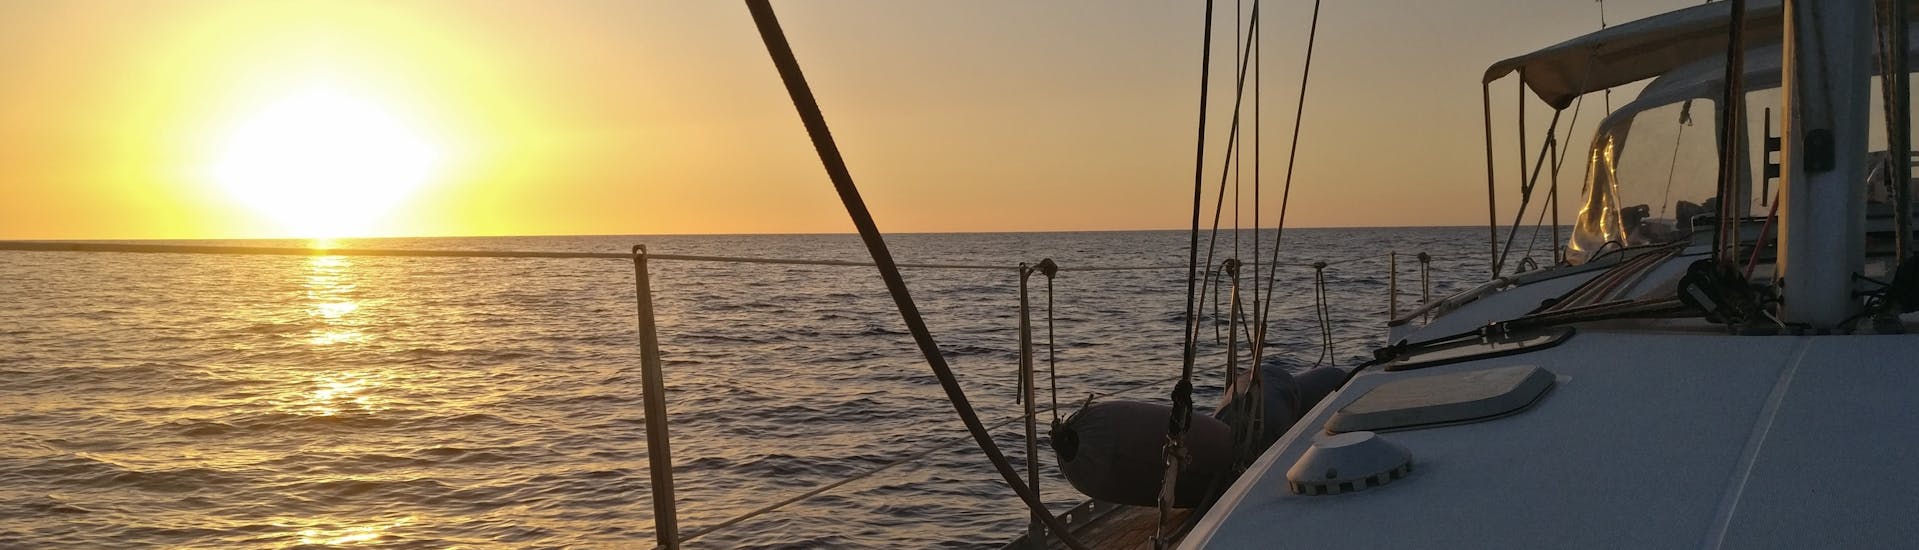 Uitzicht op zee bij zonsondergang vanaf een boot vanaf Quarantesimo Parallelo Leuca tijdens de zeiltocht van Leuca naar de kust van Salento.